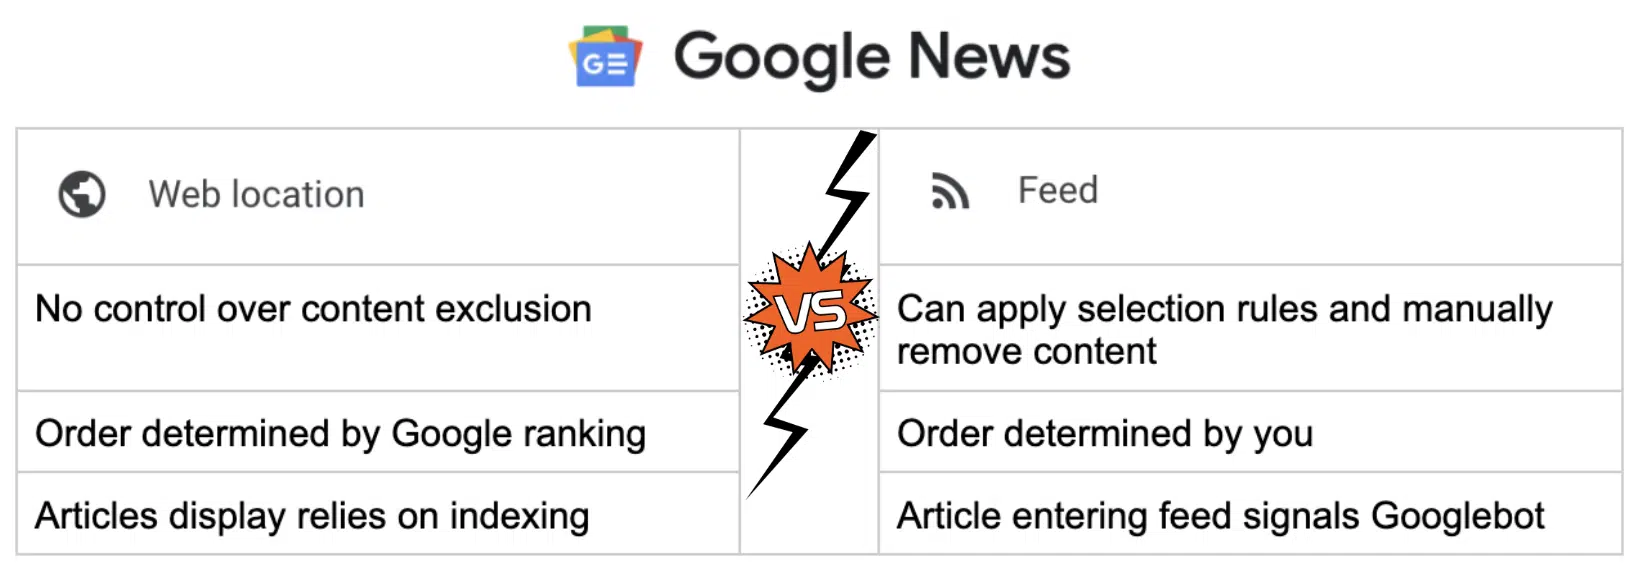 Google News - Web location vs. Feed